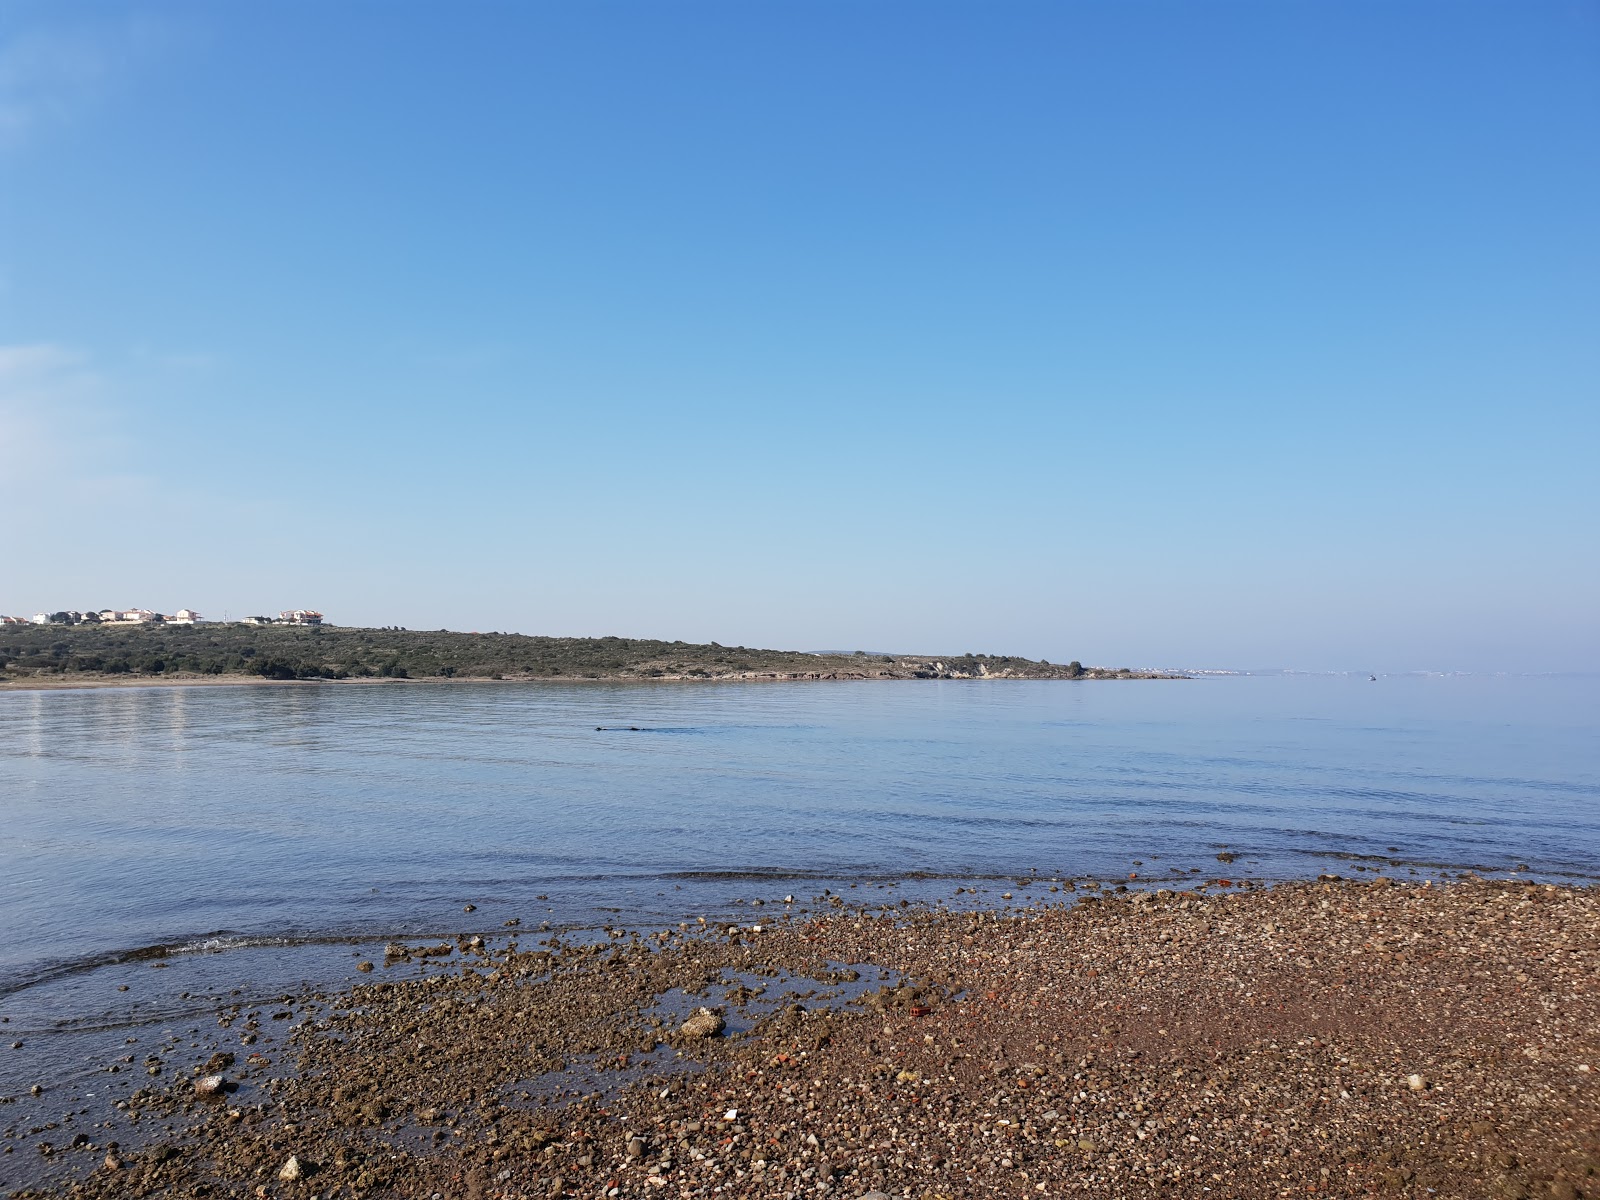 Foto de Bahcelievler plaji II con bahía mediana